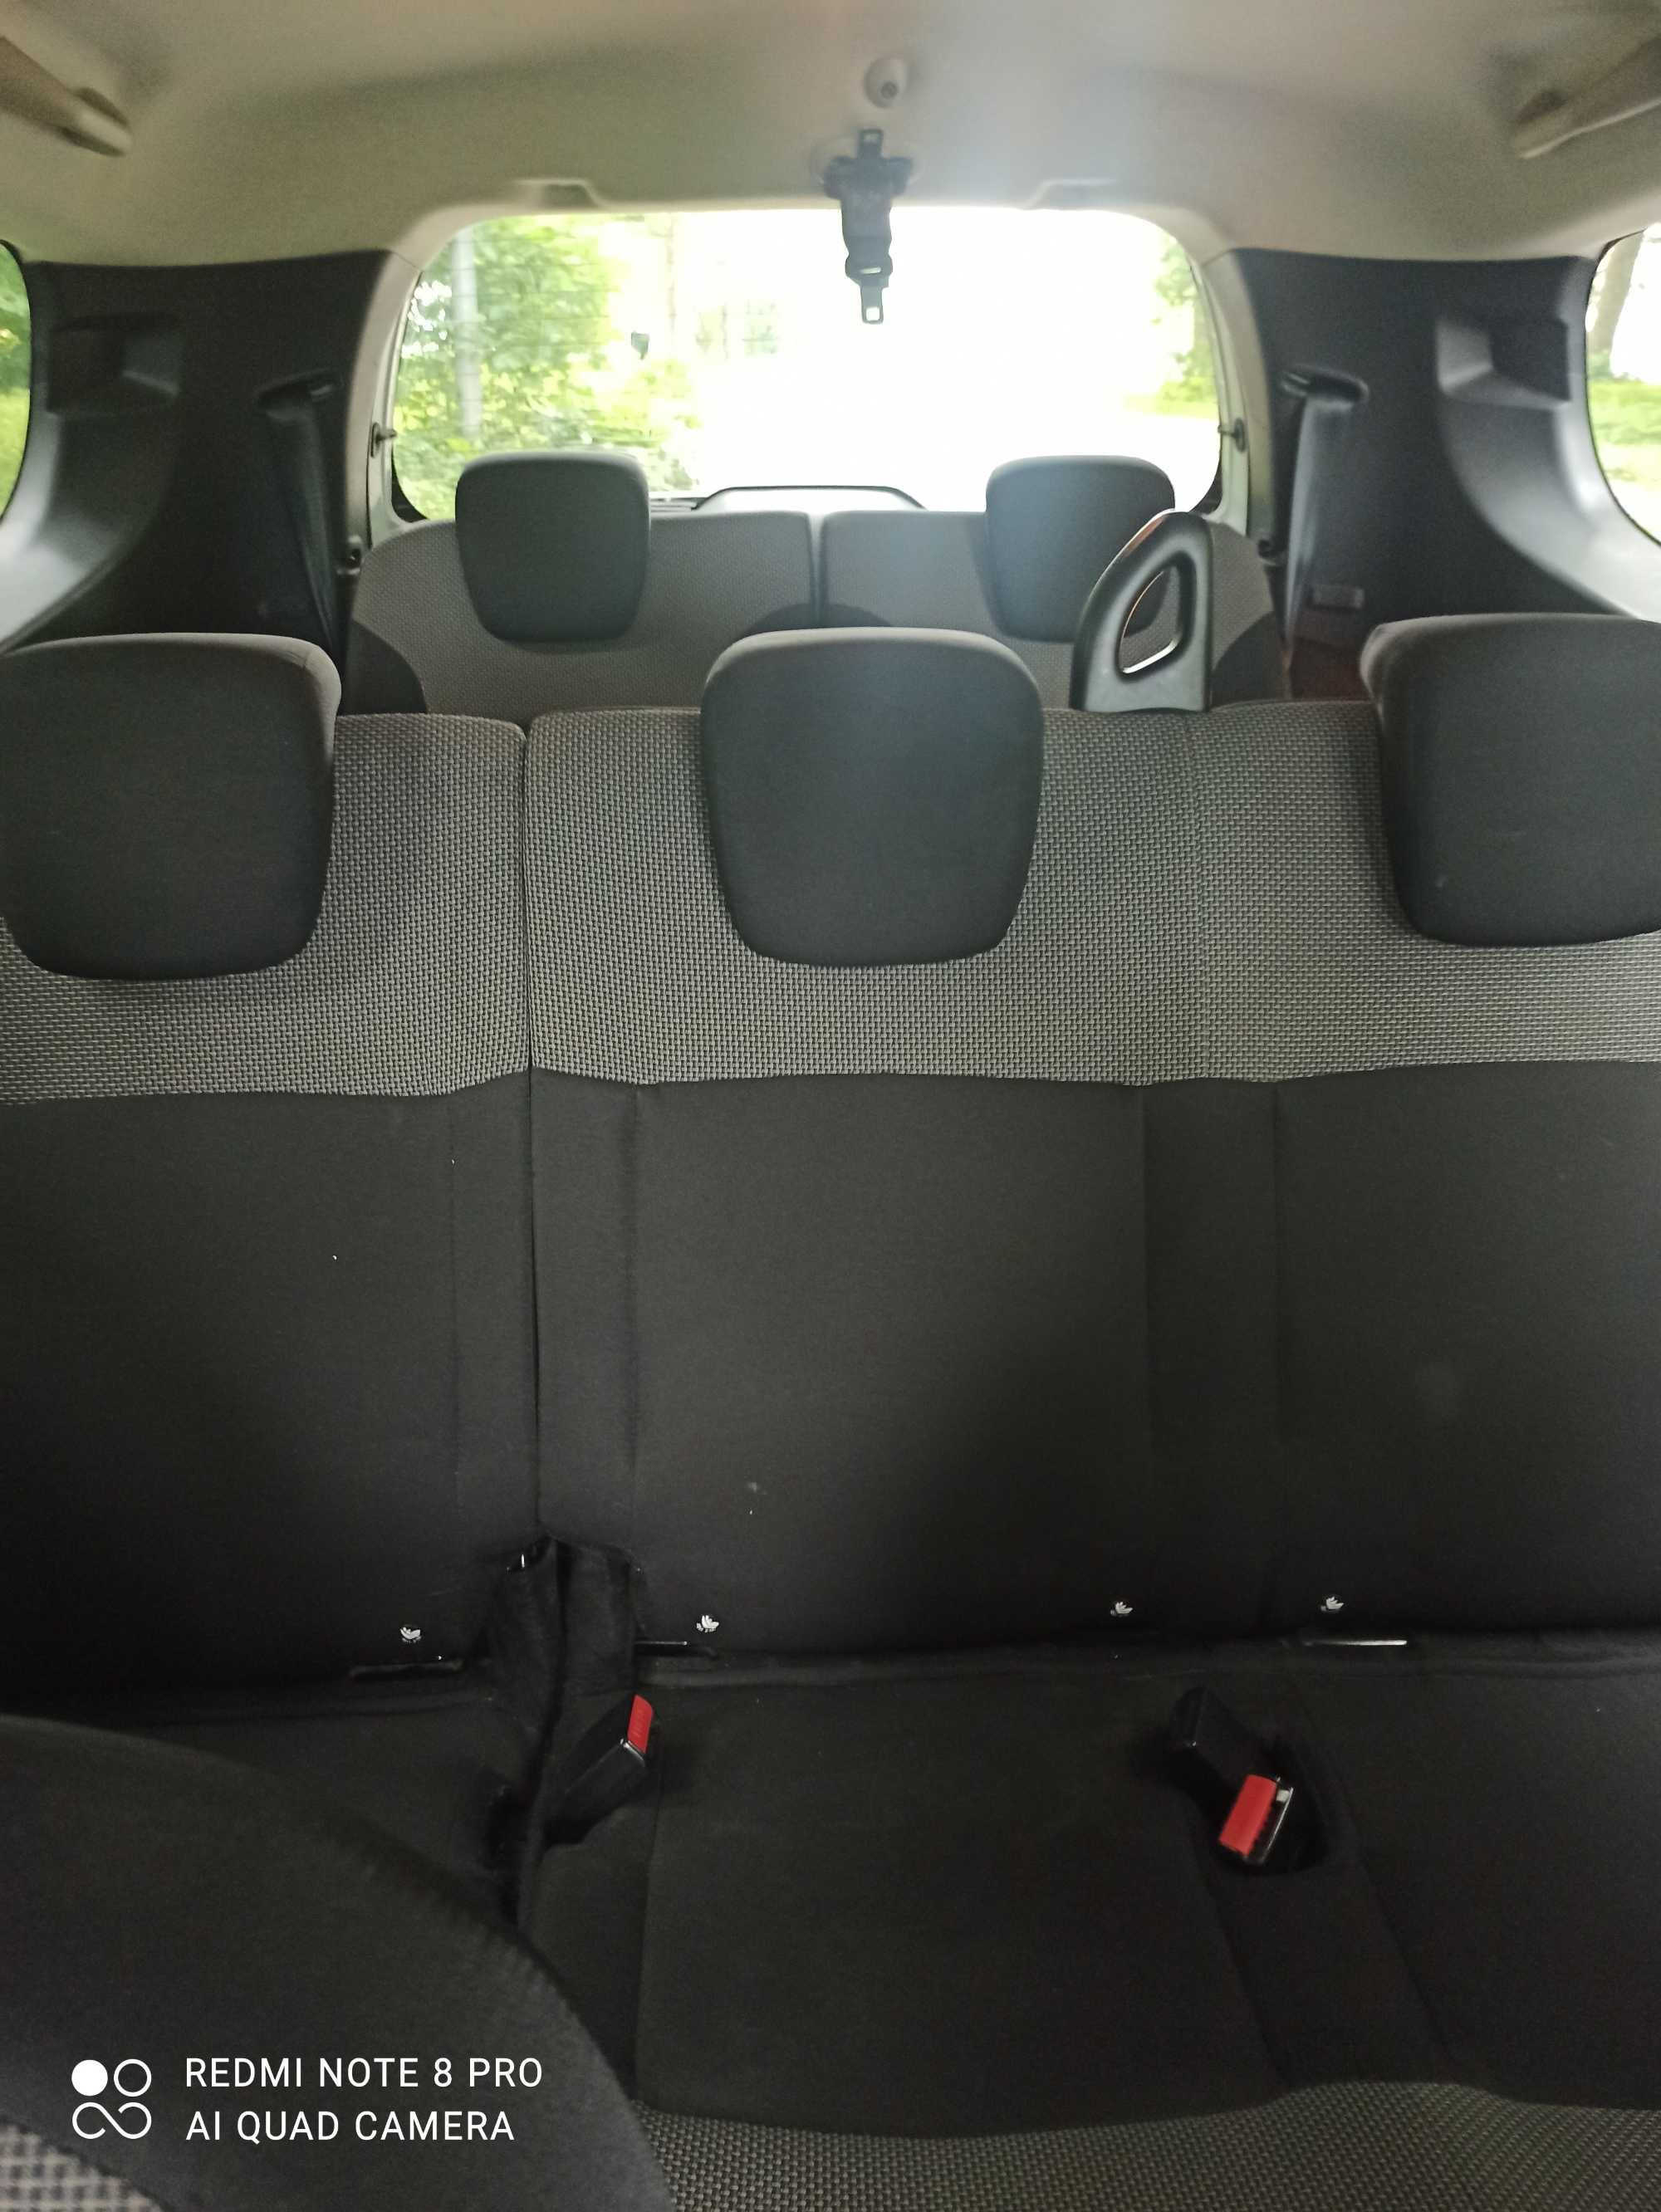 OKAZJA !!!Dacia Lodgy 7 osobowa 1 wlasciciel klimatyzacja serwisowany